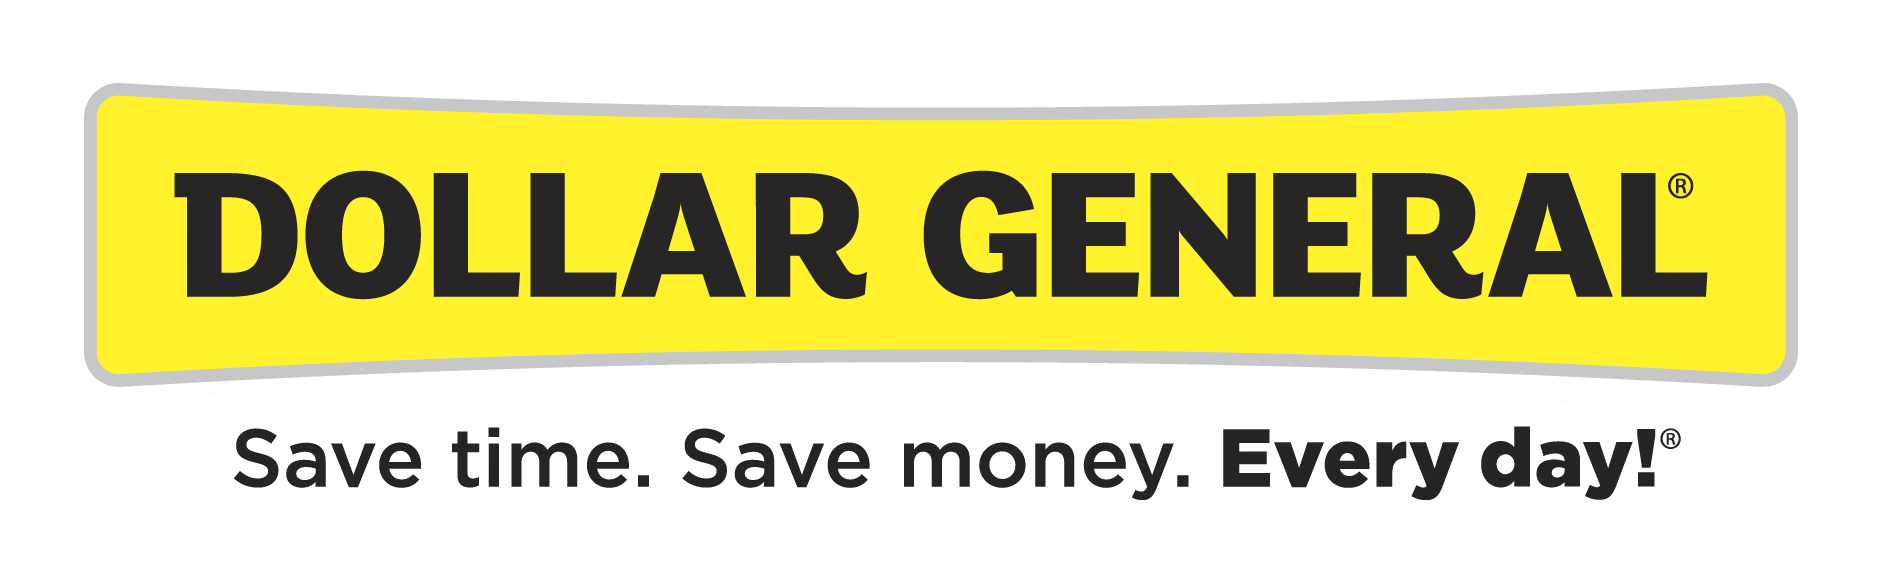 Dollar General Logo - Dollar General Logo PNG Image - PurePNG | Free transparent CC0 PNG ...